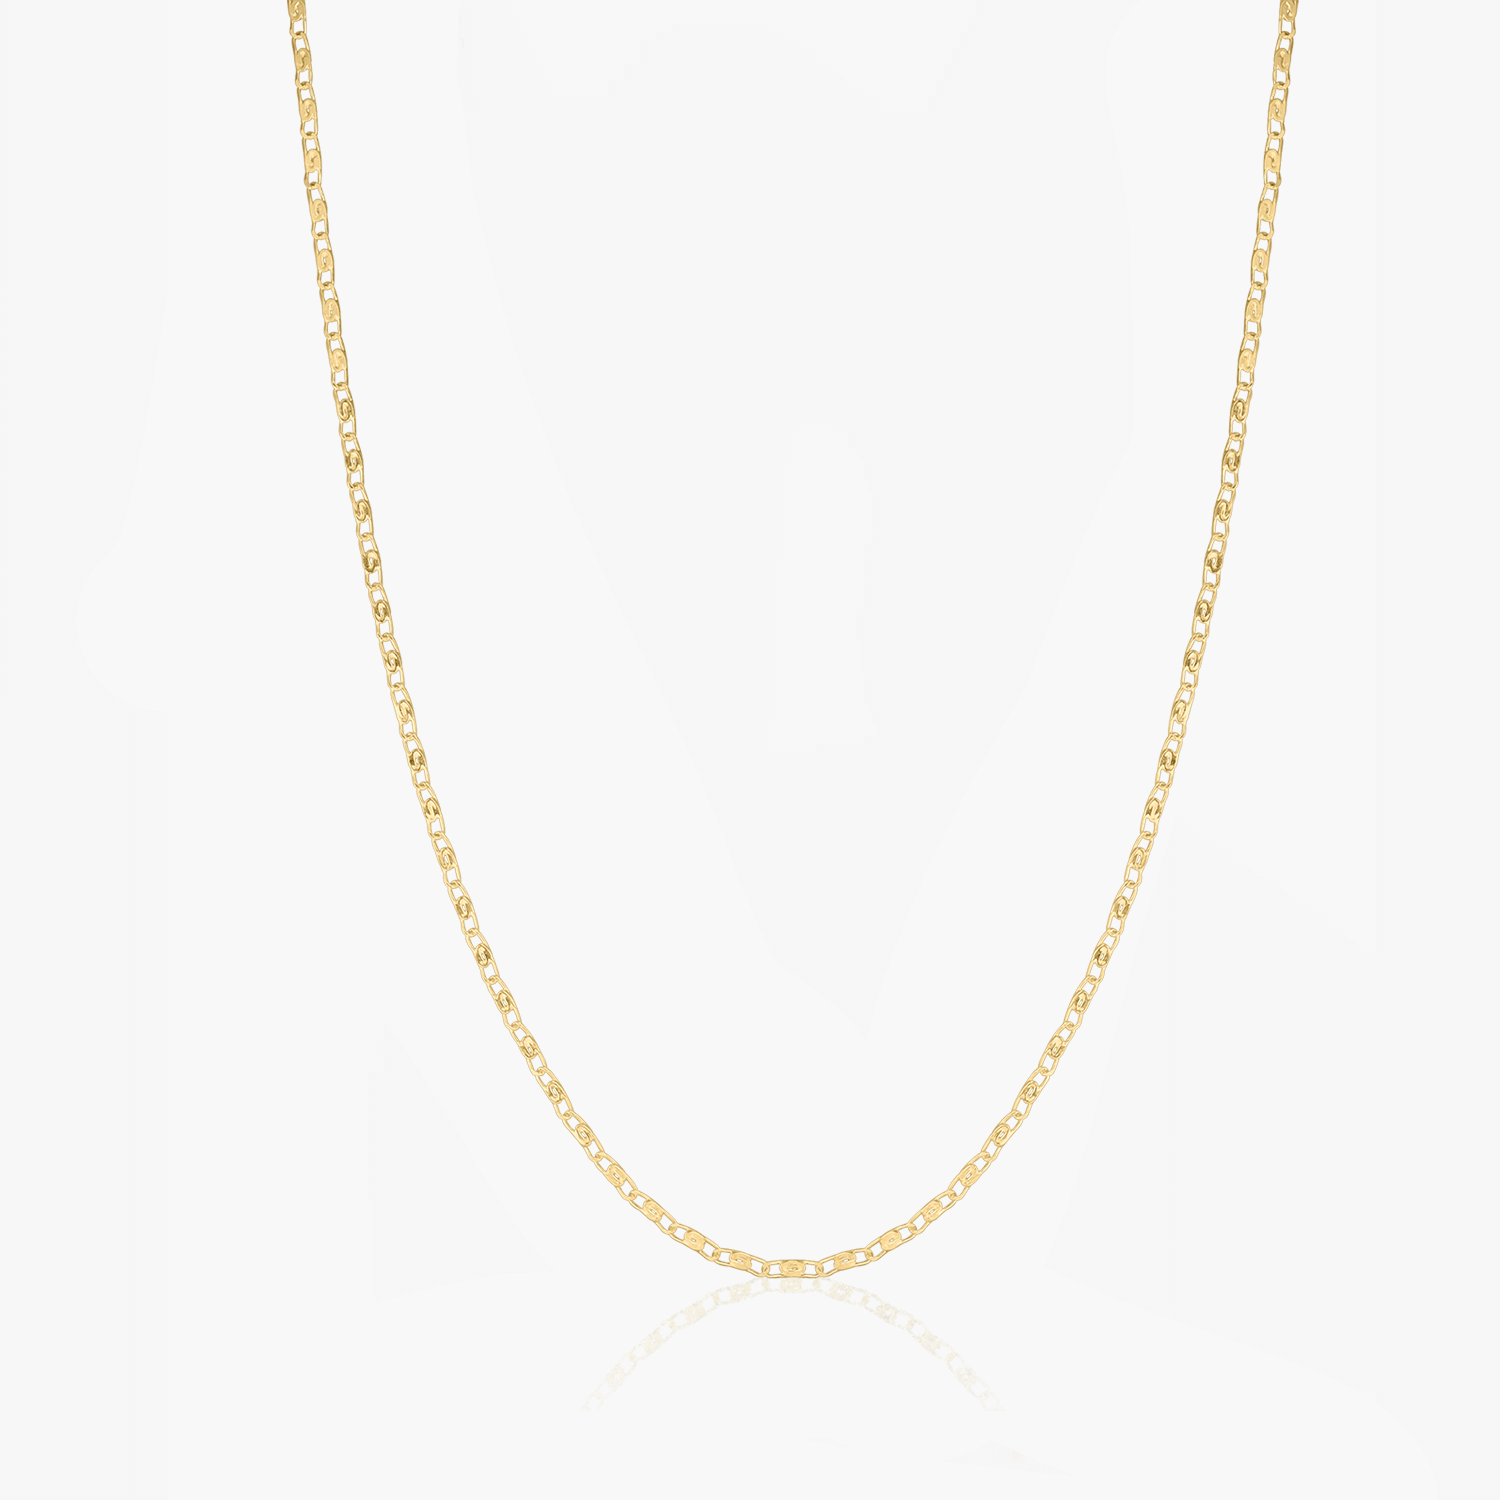 Golden Anchor silver necklace